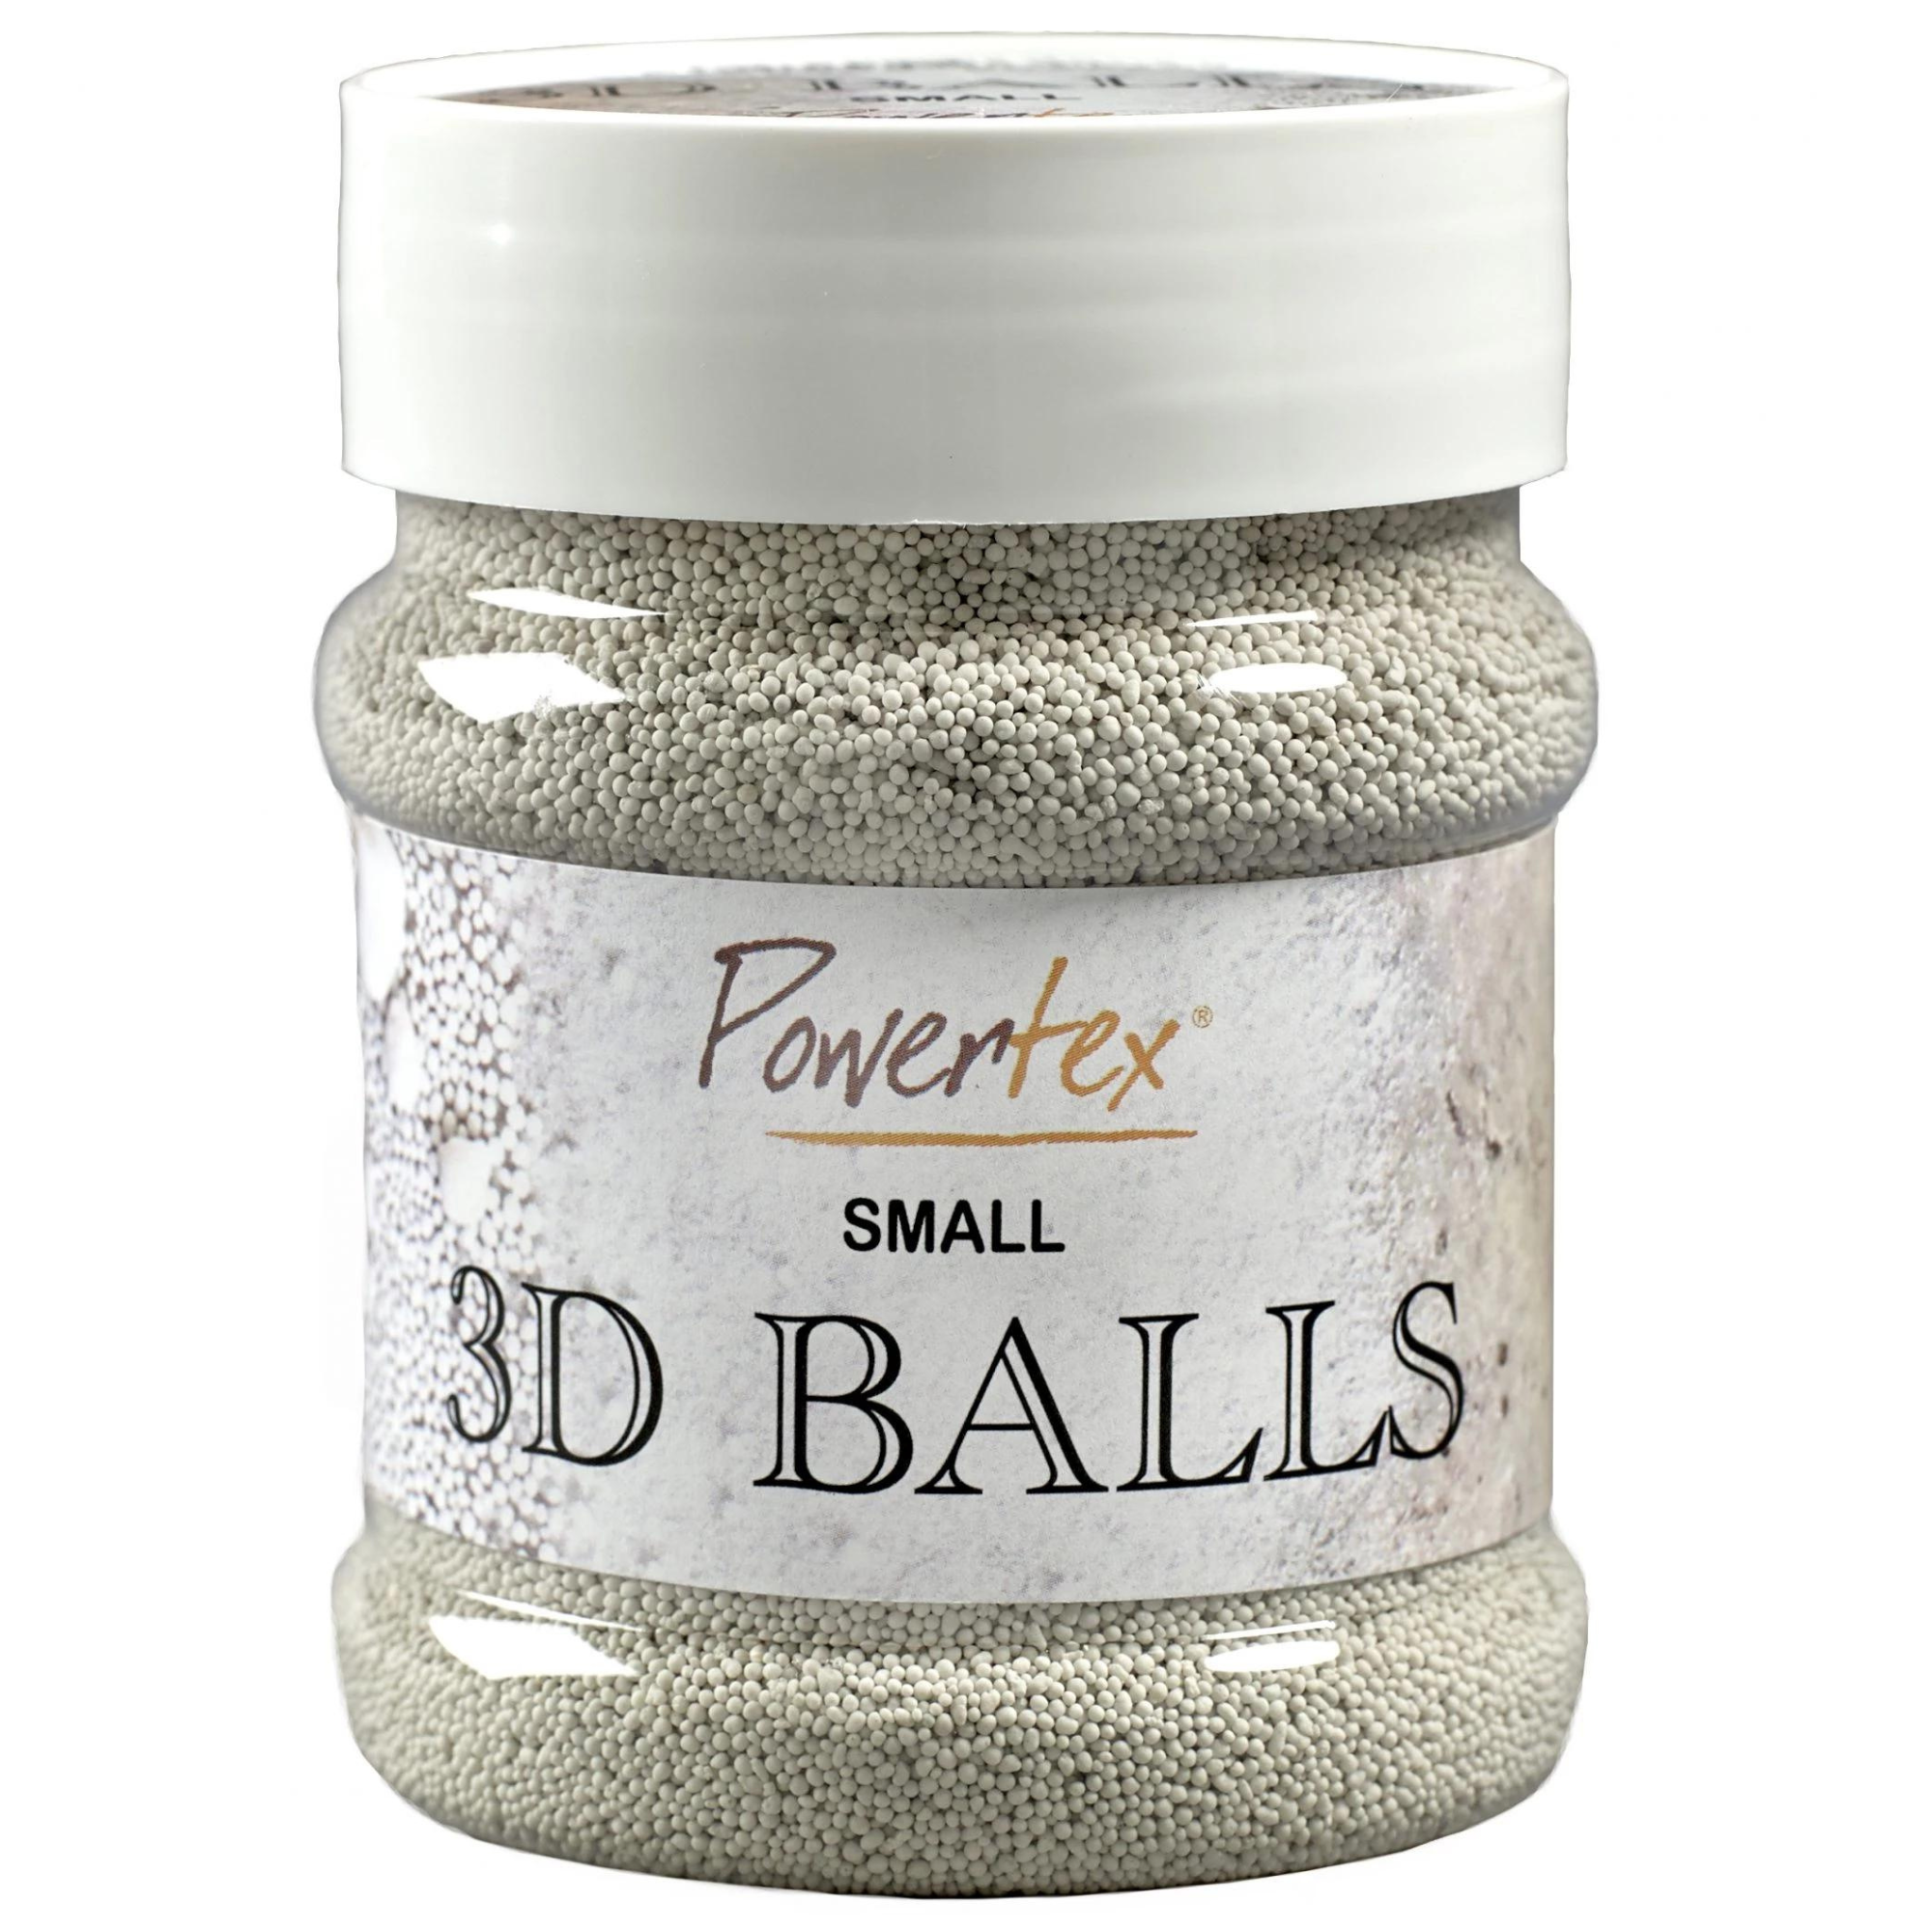 Powertex 3D Balls Small 230 ml